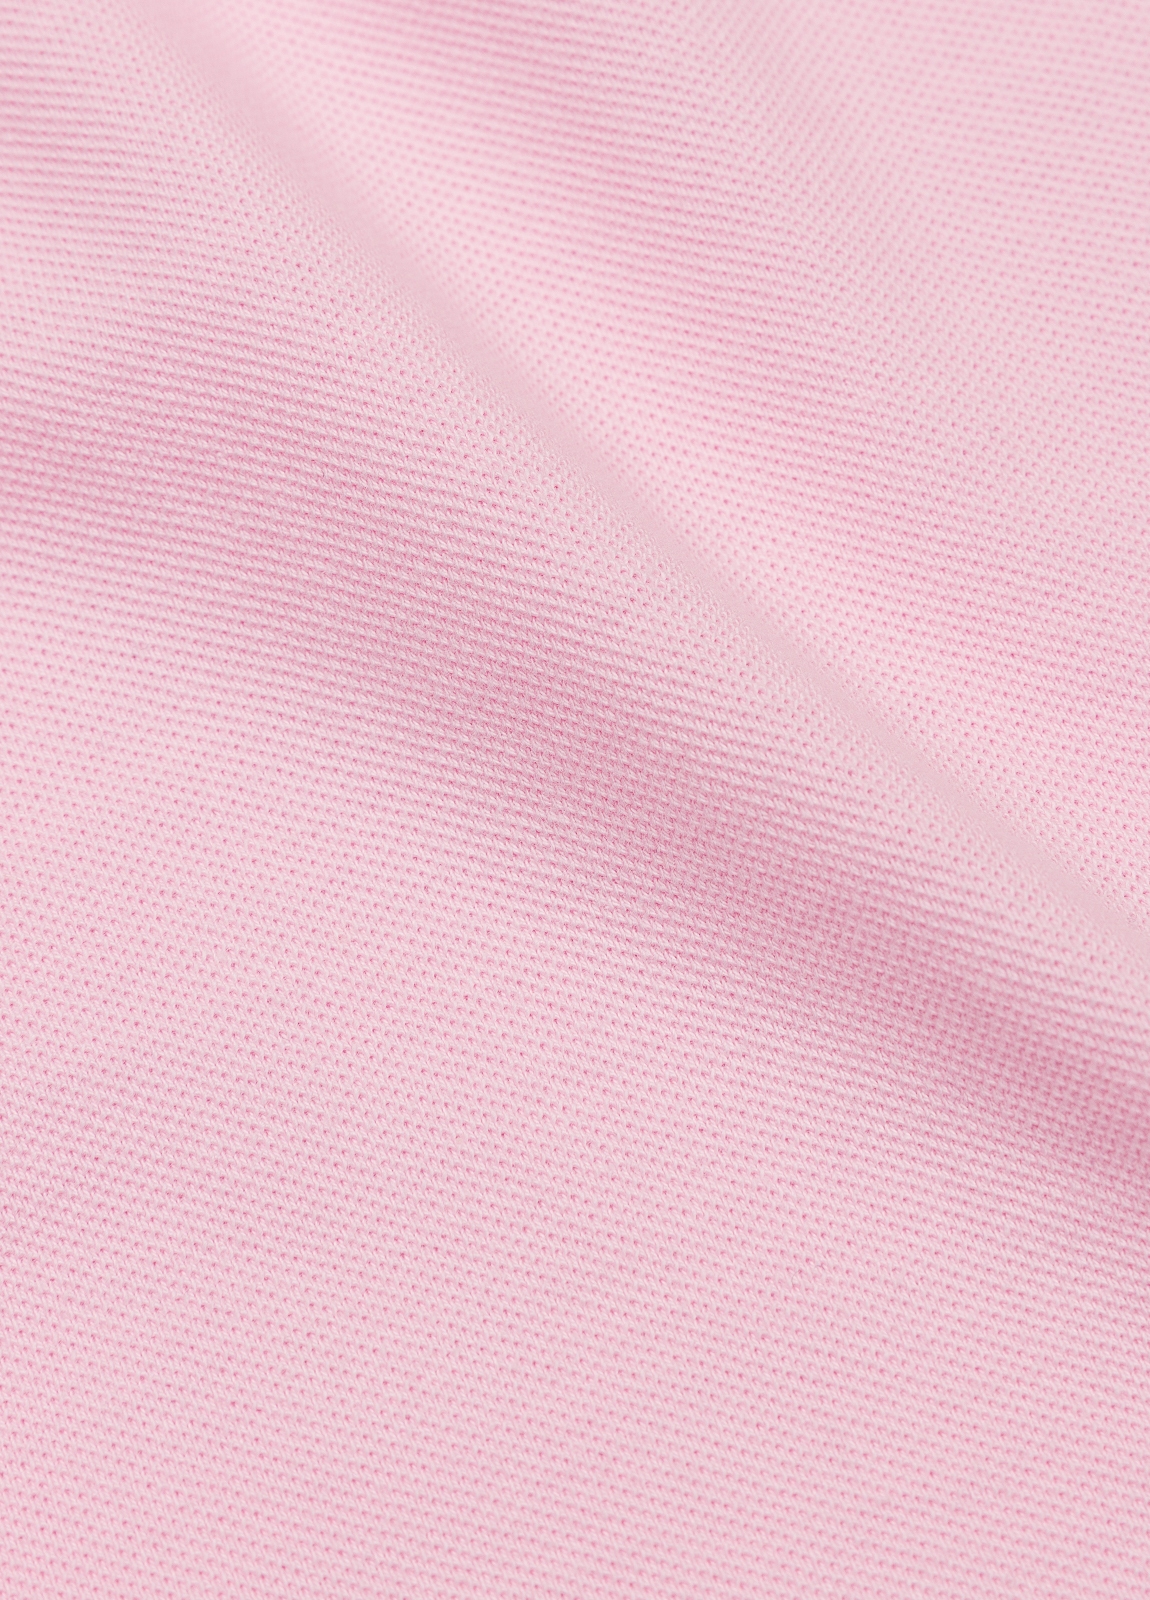 Polo FUREST COLECCIÓN piqué manga corta color rosa - Ítem7